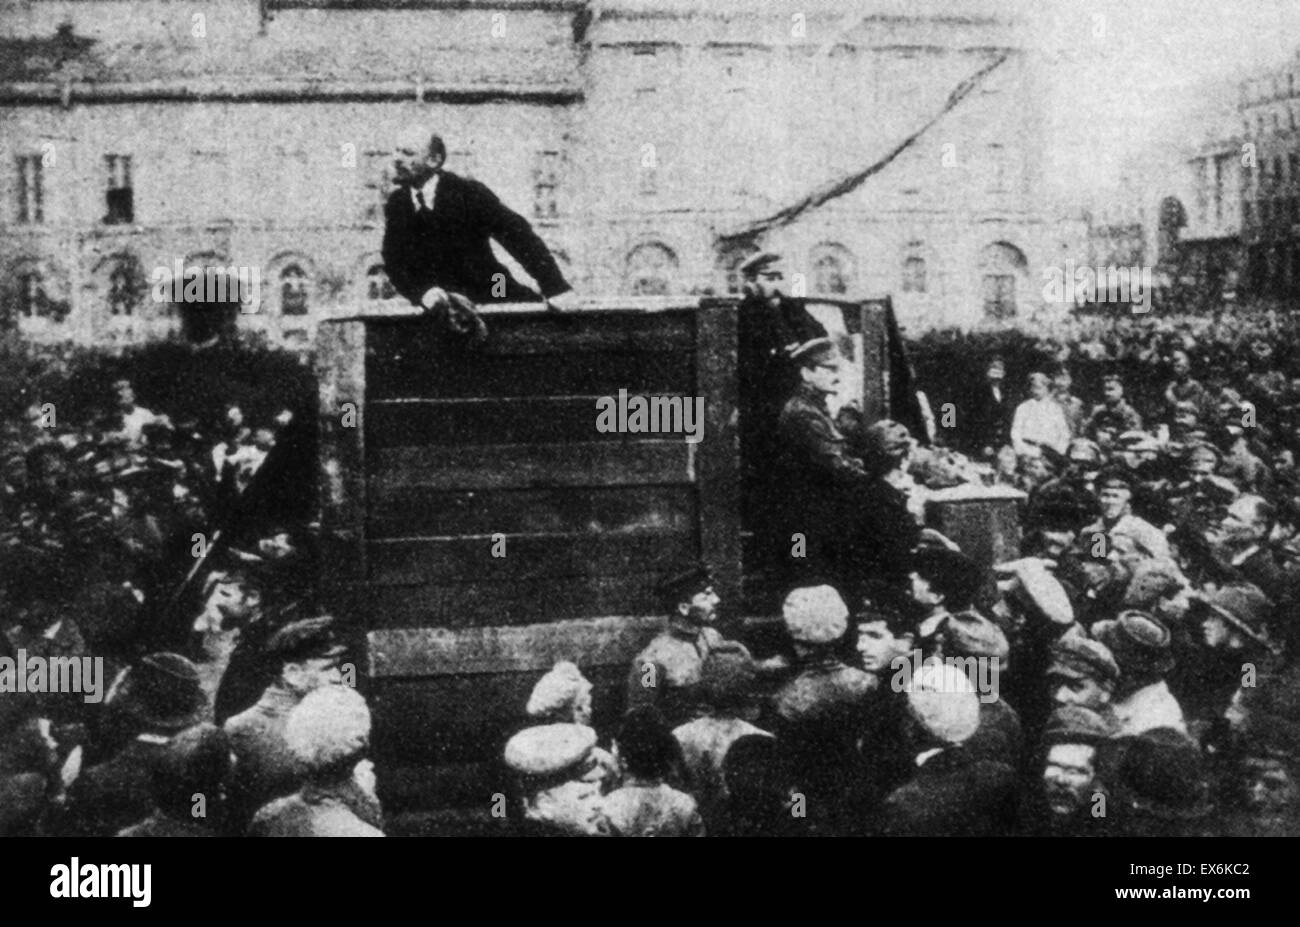 Vladimir Lenin (1870-1924), Russische kommunistische revolutionäre, Politiker und politischer Theoretiker, mit Leon Trotsky (1879-1940), marxistischer revolutionär und Theoretiker, sowjetischer Politiker und Gründer und ersten Führer der Roten Armee auf dem Roten Platz, Moskau 1 Stockfoto